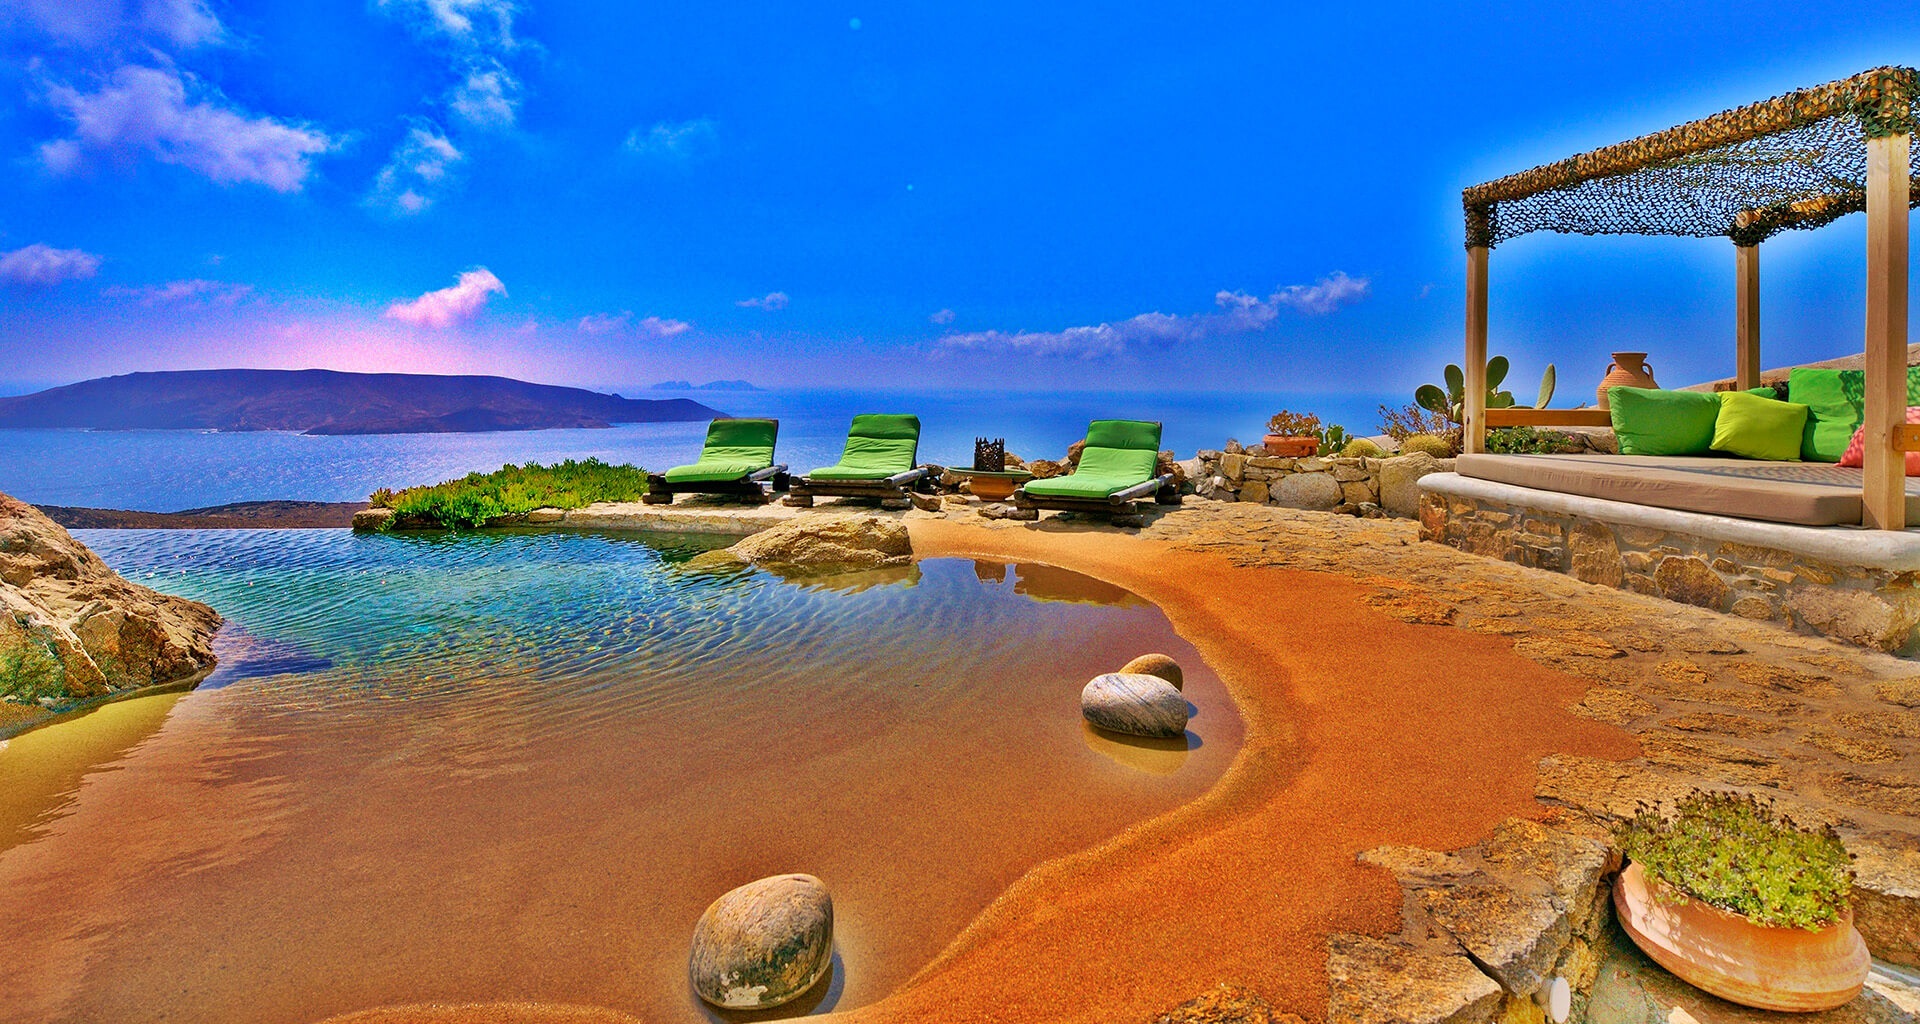 Greek Islands Image Gallery